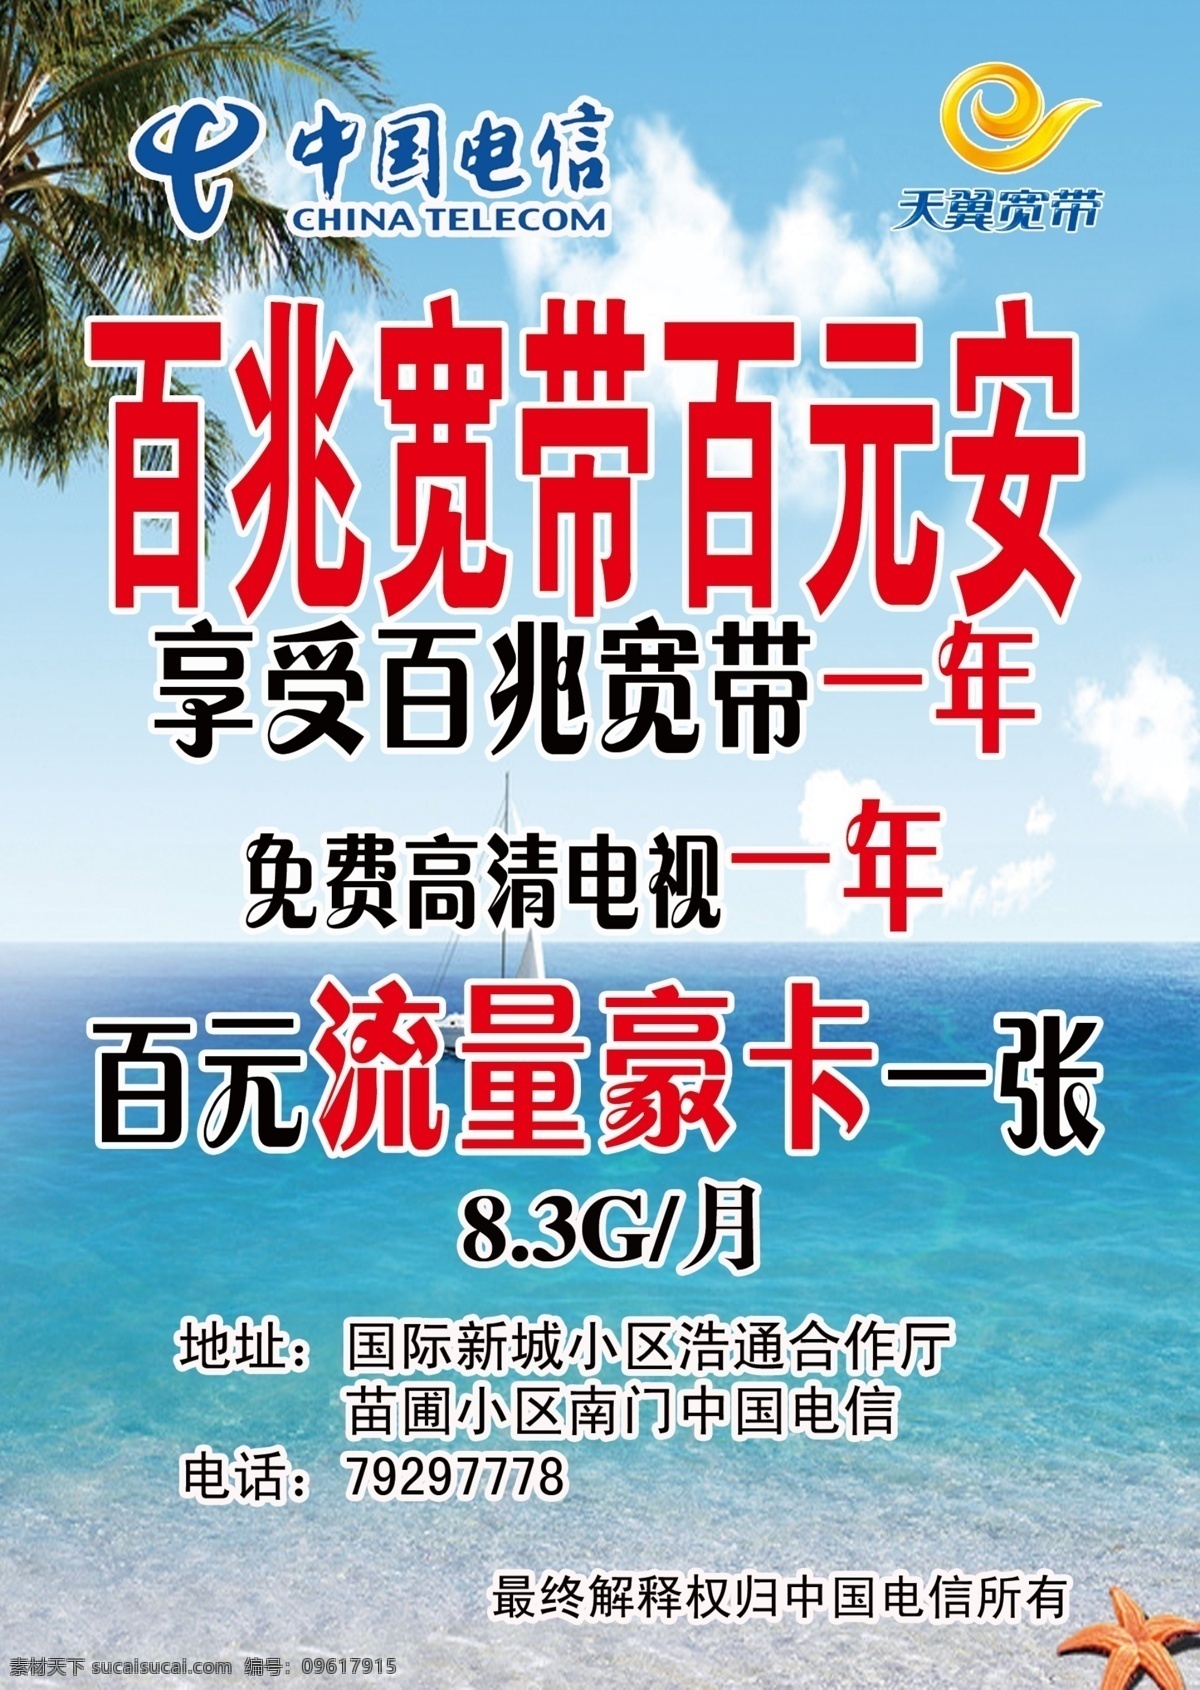 中国电信 宣传单 宽带优惠海报 台卡海边背景 海水 蓝天 天翼 分层